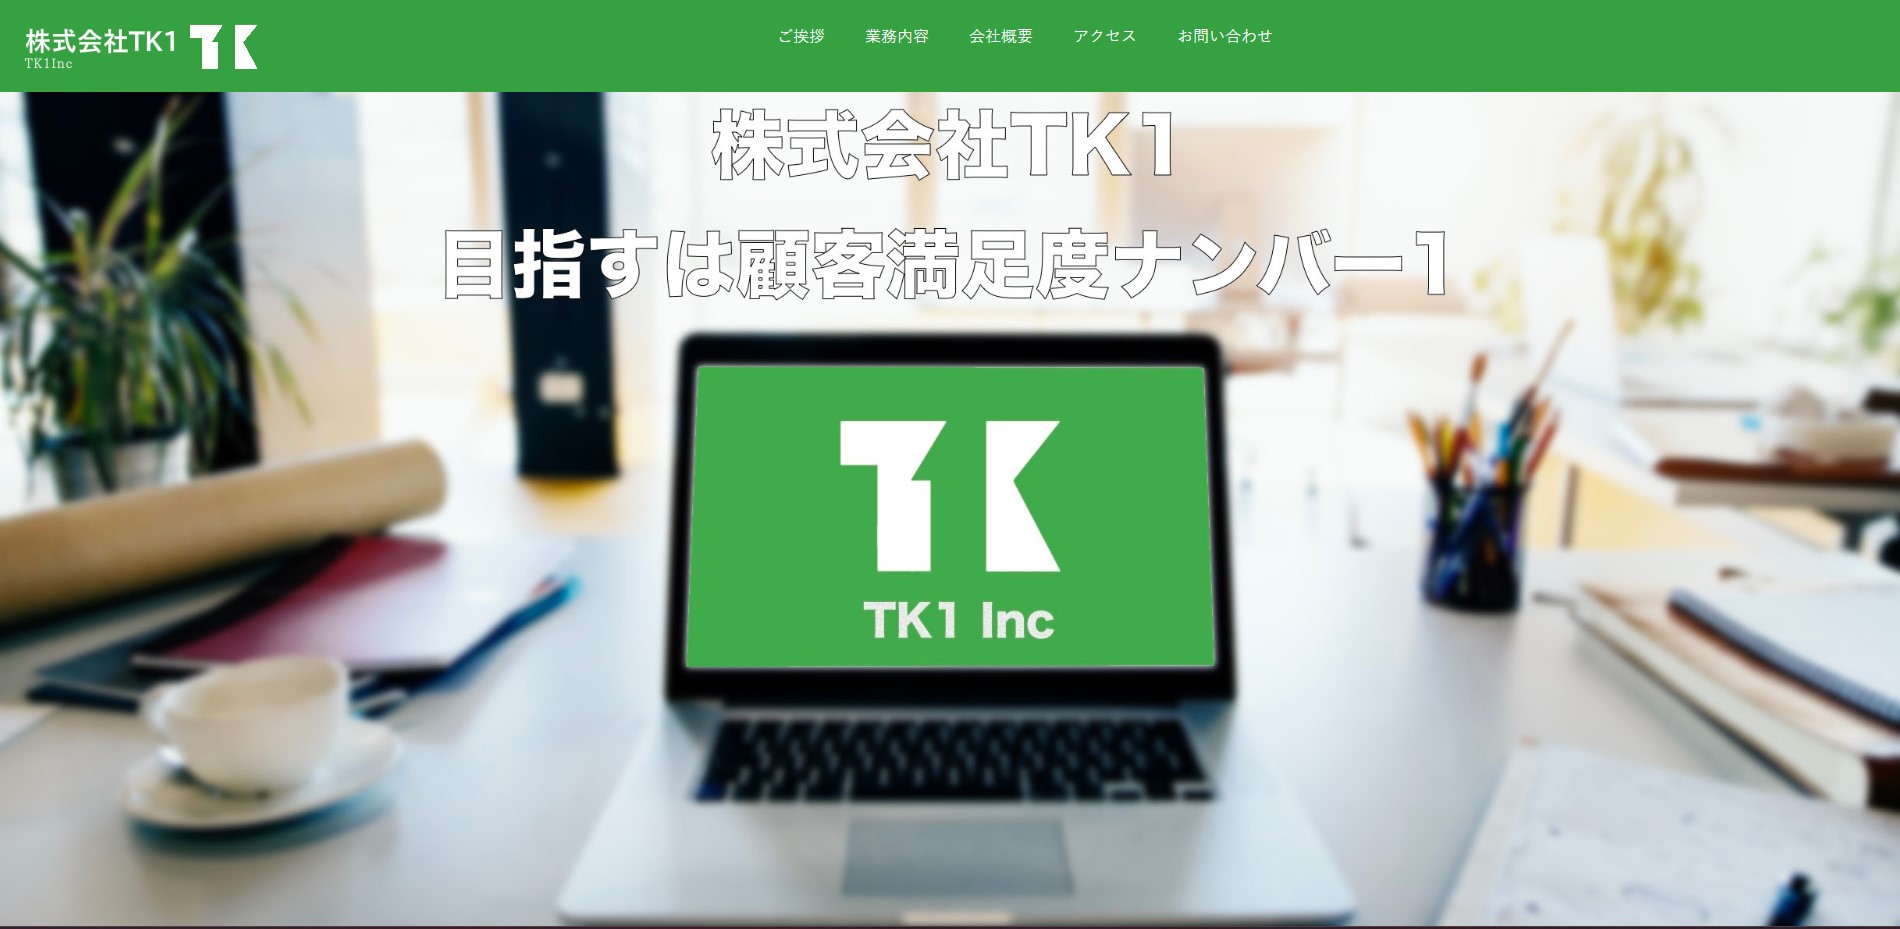 株式会社TK1